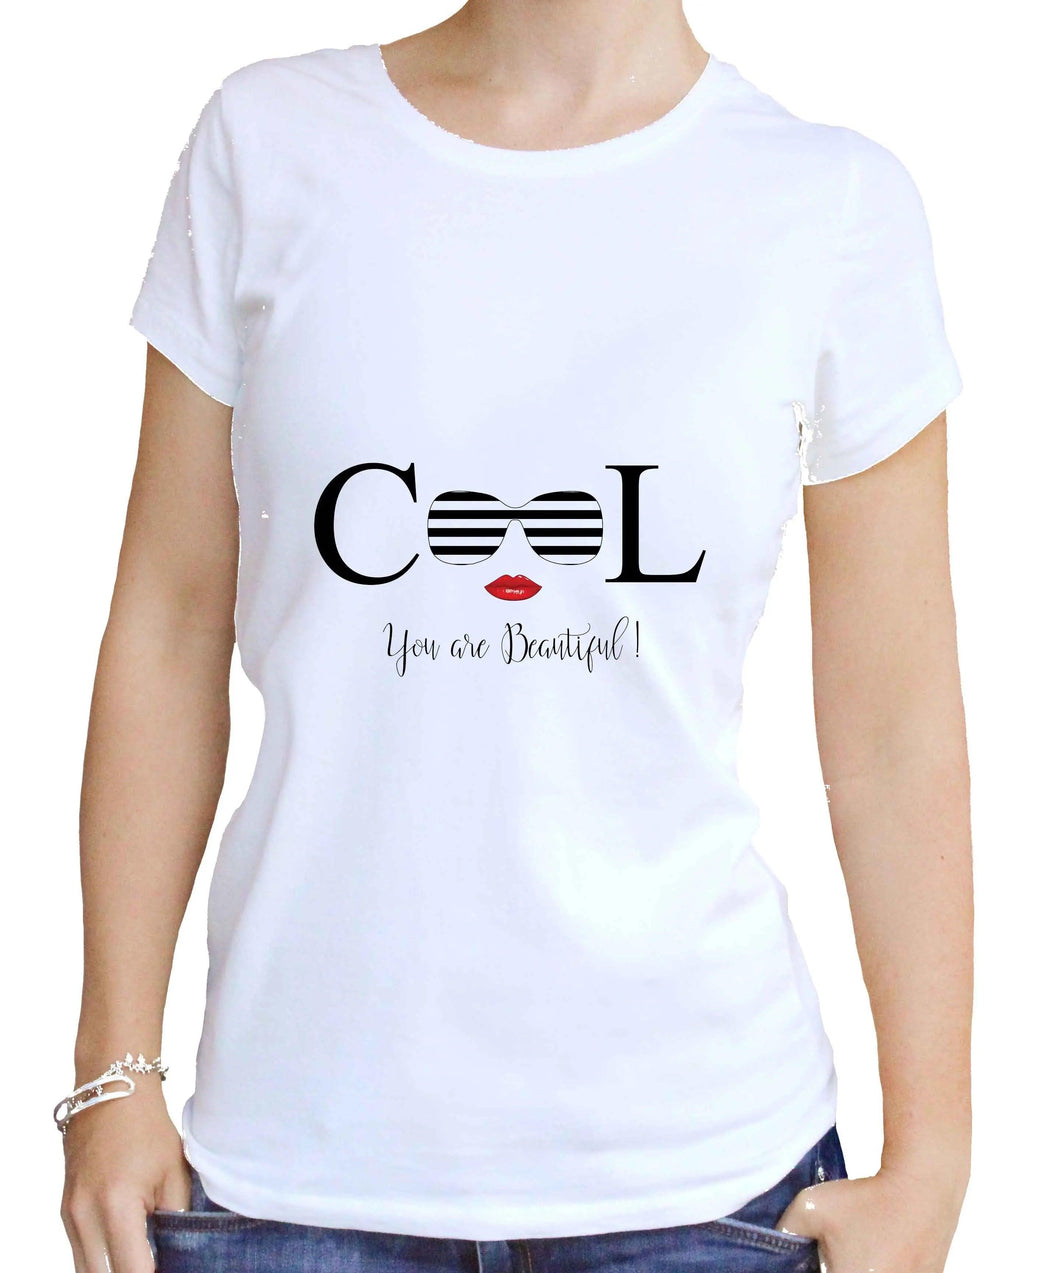 Coole Damen BIO T-Shirts mit Spruch Print bedruckt - Coole Klamotten Sachen Teenager Mädchen Jugendliche SPOD